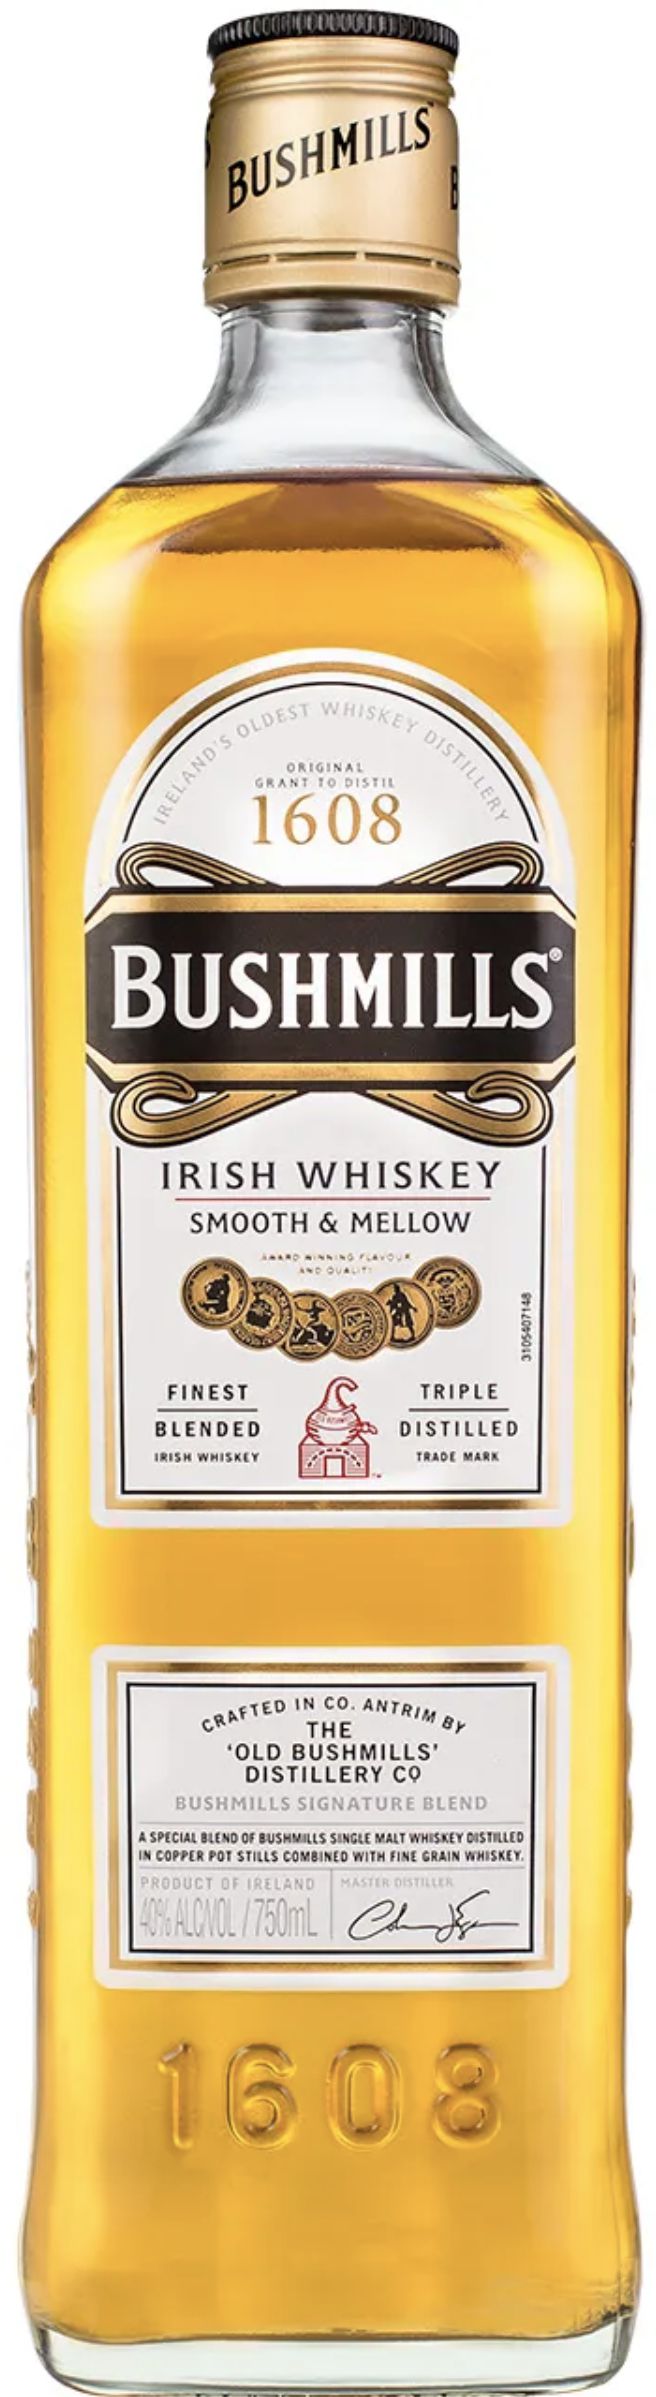 ВИСКИ ирландский купажированный Бушмилз Ориджинал в подарочной упаковке тм. Bushmils, креп 40%, емк 0,7л